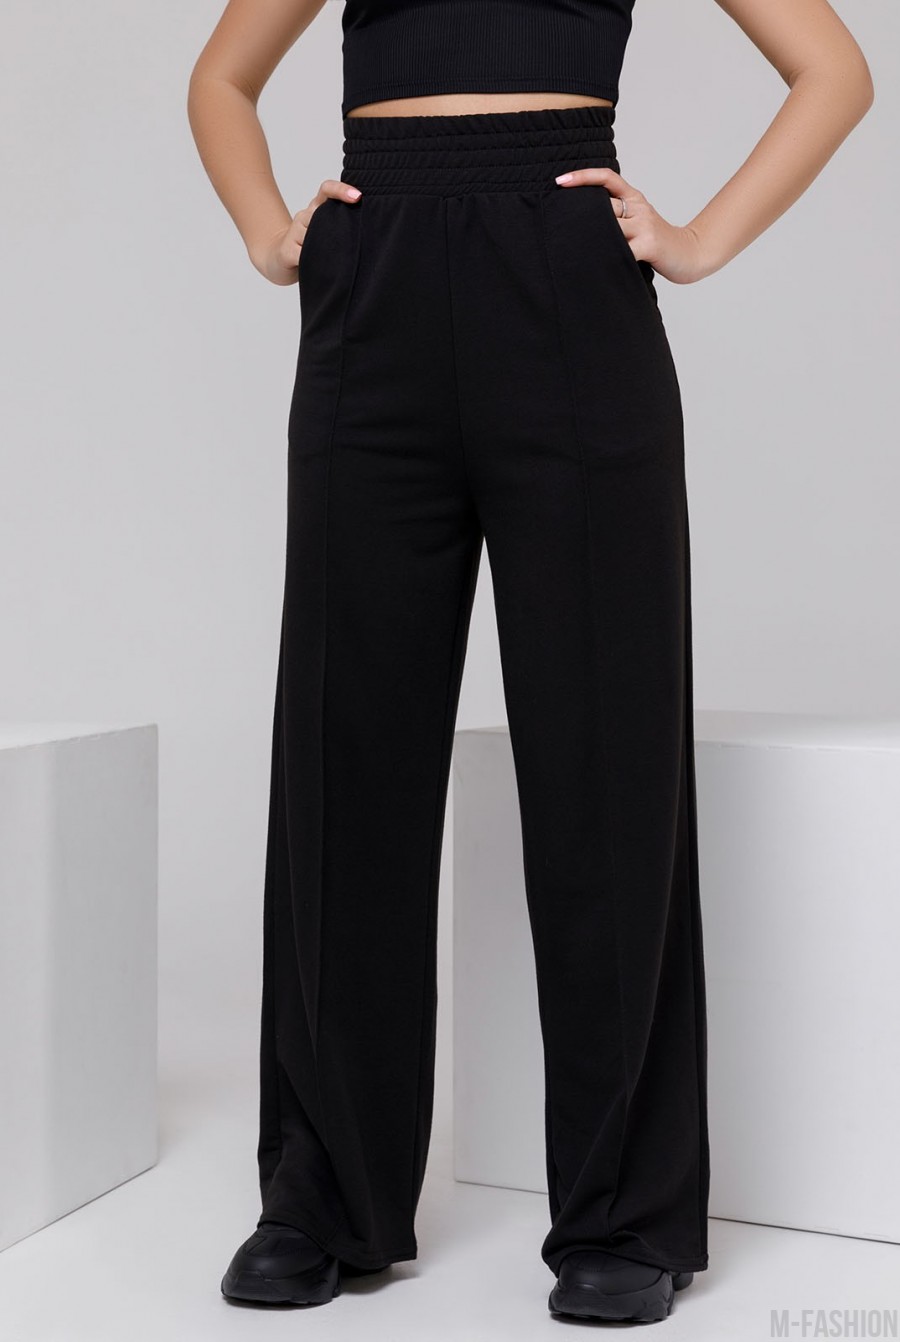 Черные широкие трикотажные брюки со стрелками - Фото 1